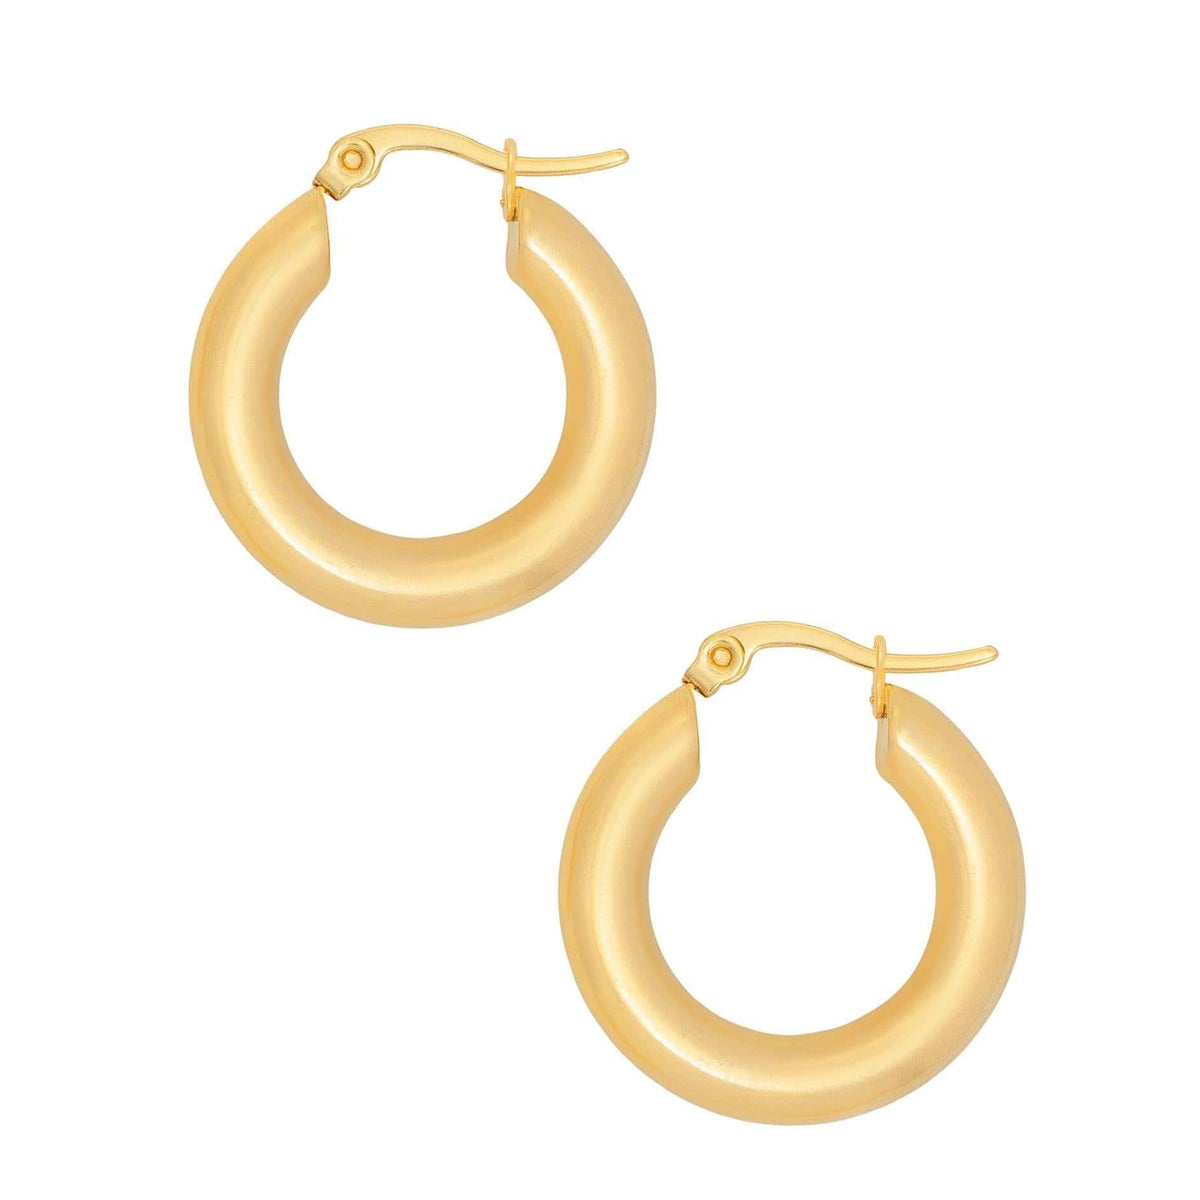 BOHOMOON Stainless Steel Mykonos Hoop Earrings Gold / Small